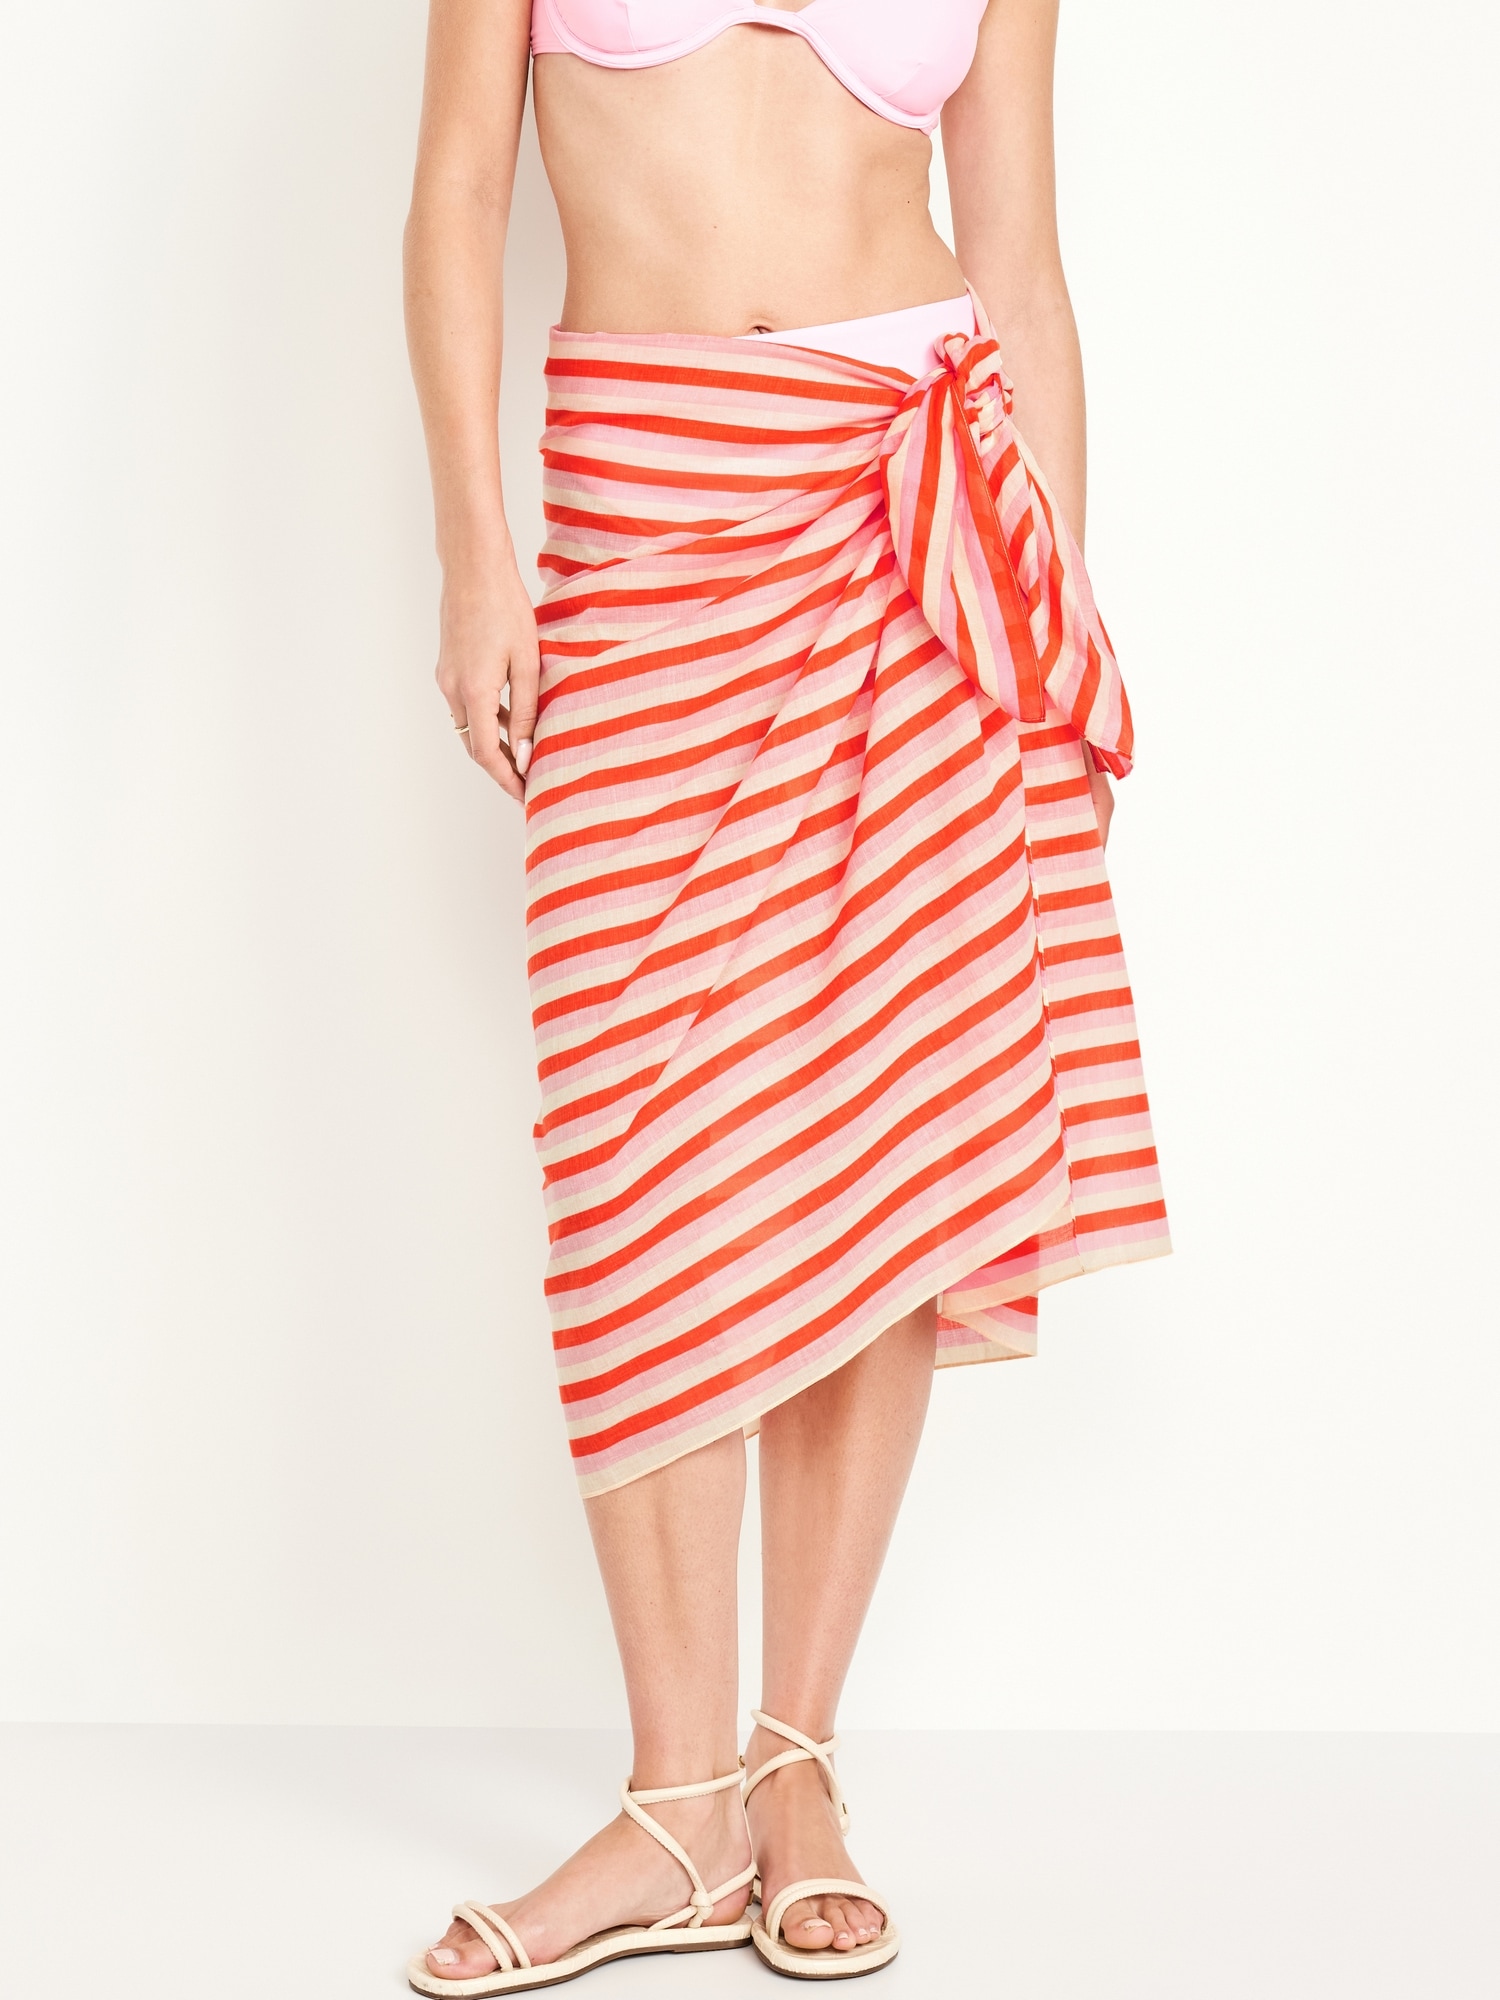 Sarong Skirt for Women